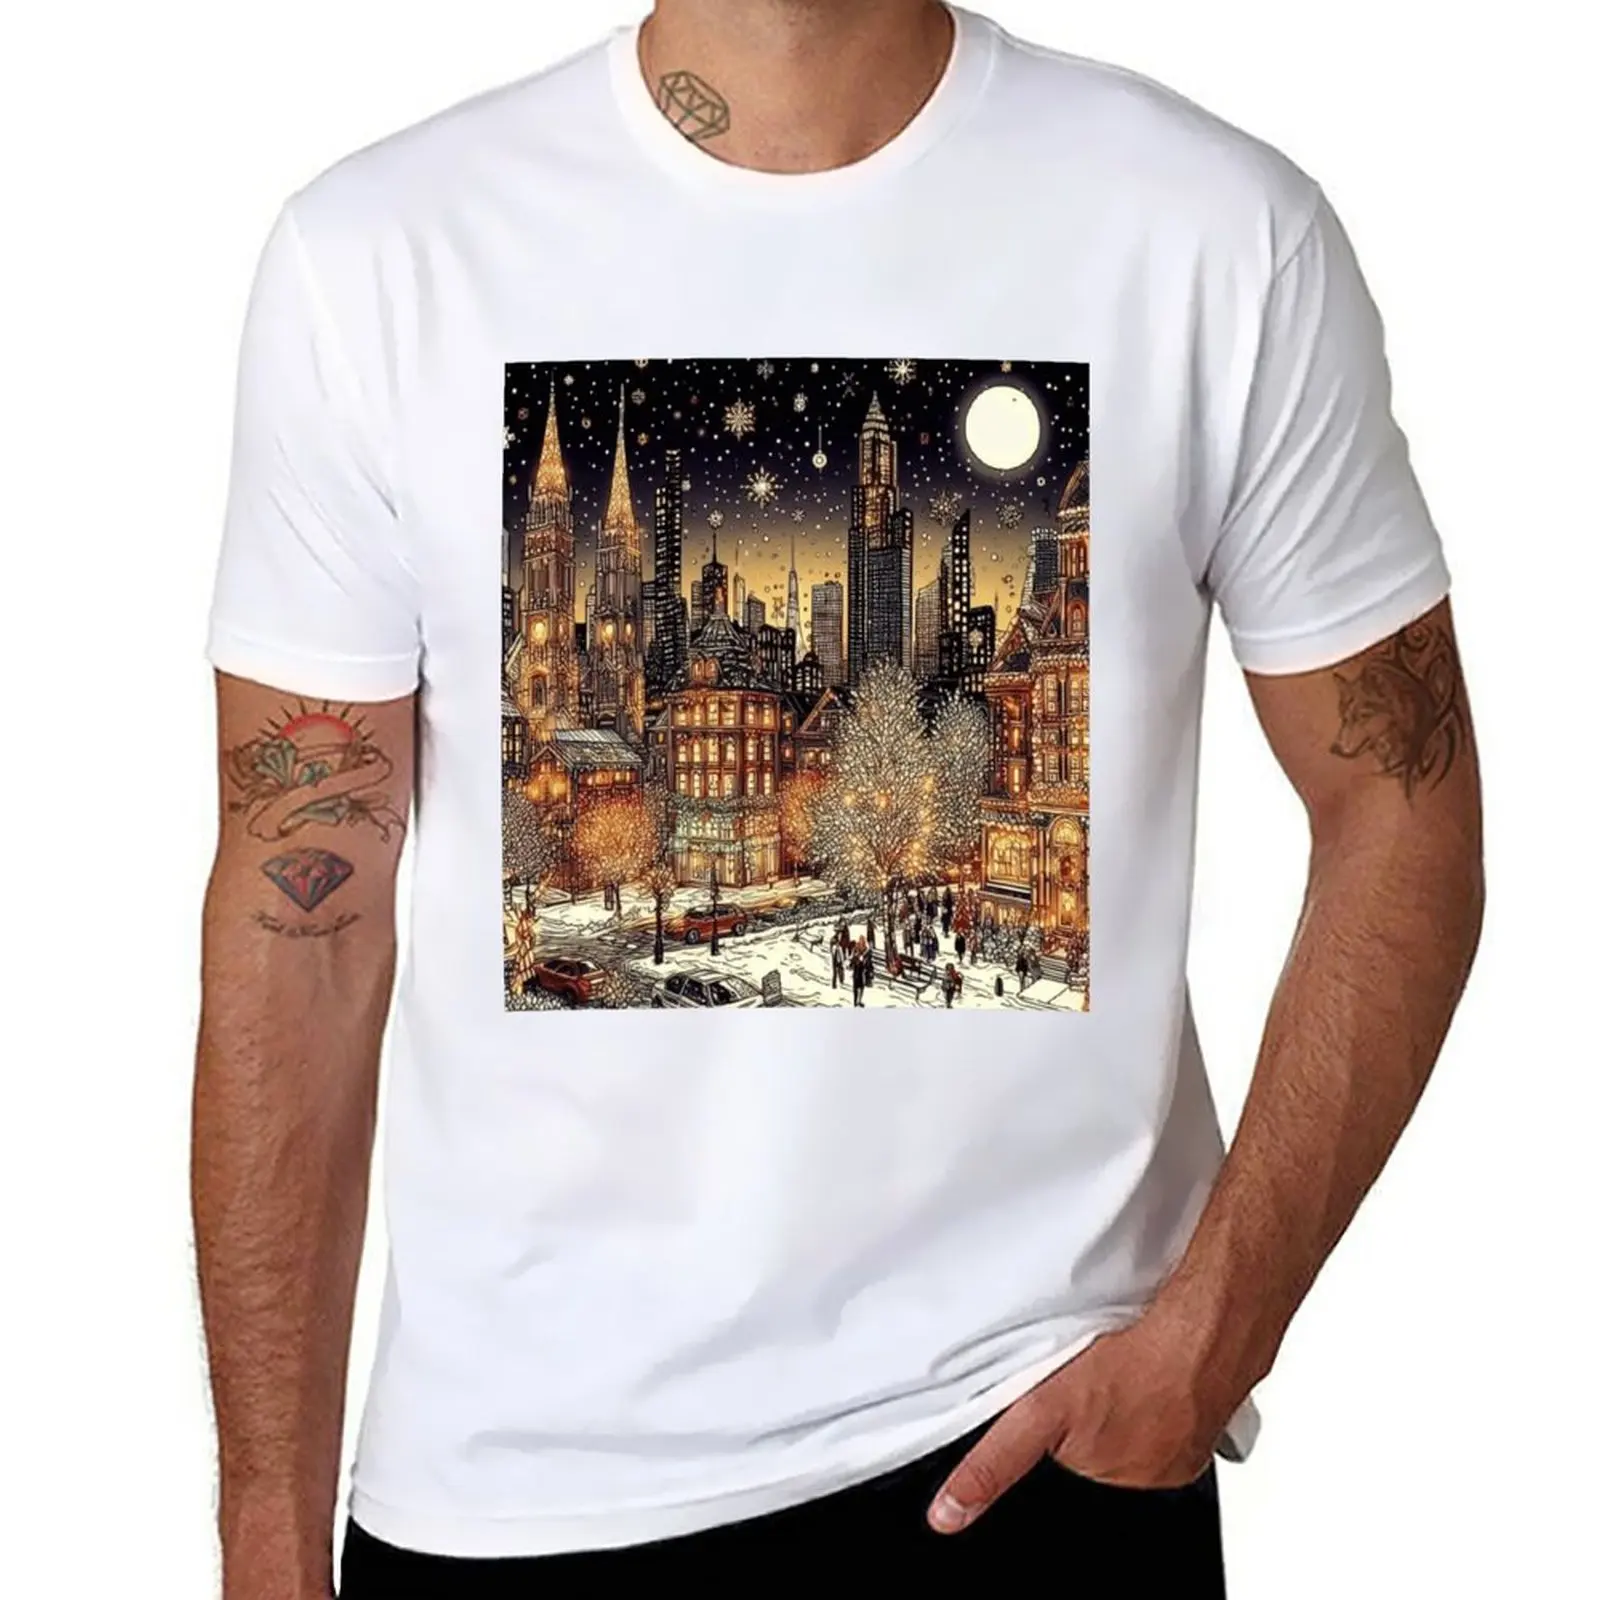 

Футболка с надписью «Рождественская ночь в городе», футболки на заказ, одежда в эстетике, футболки большого размера, мужская одежда